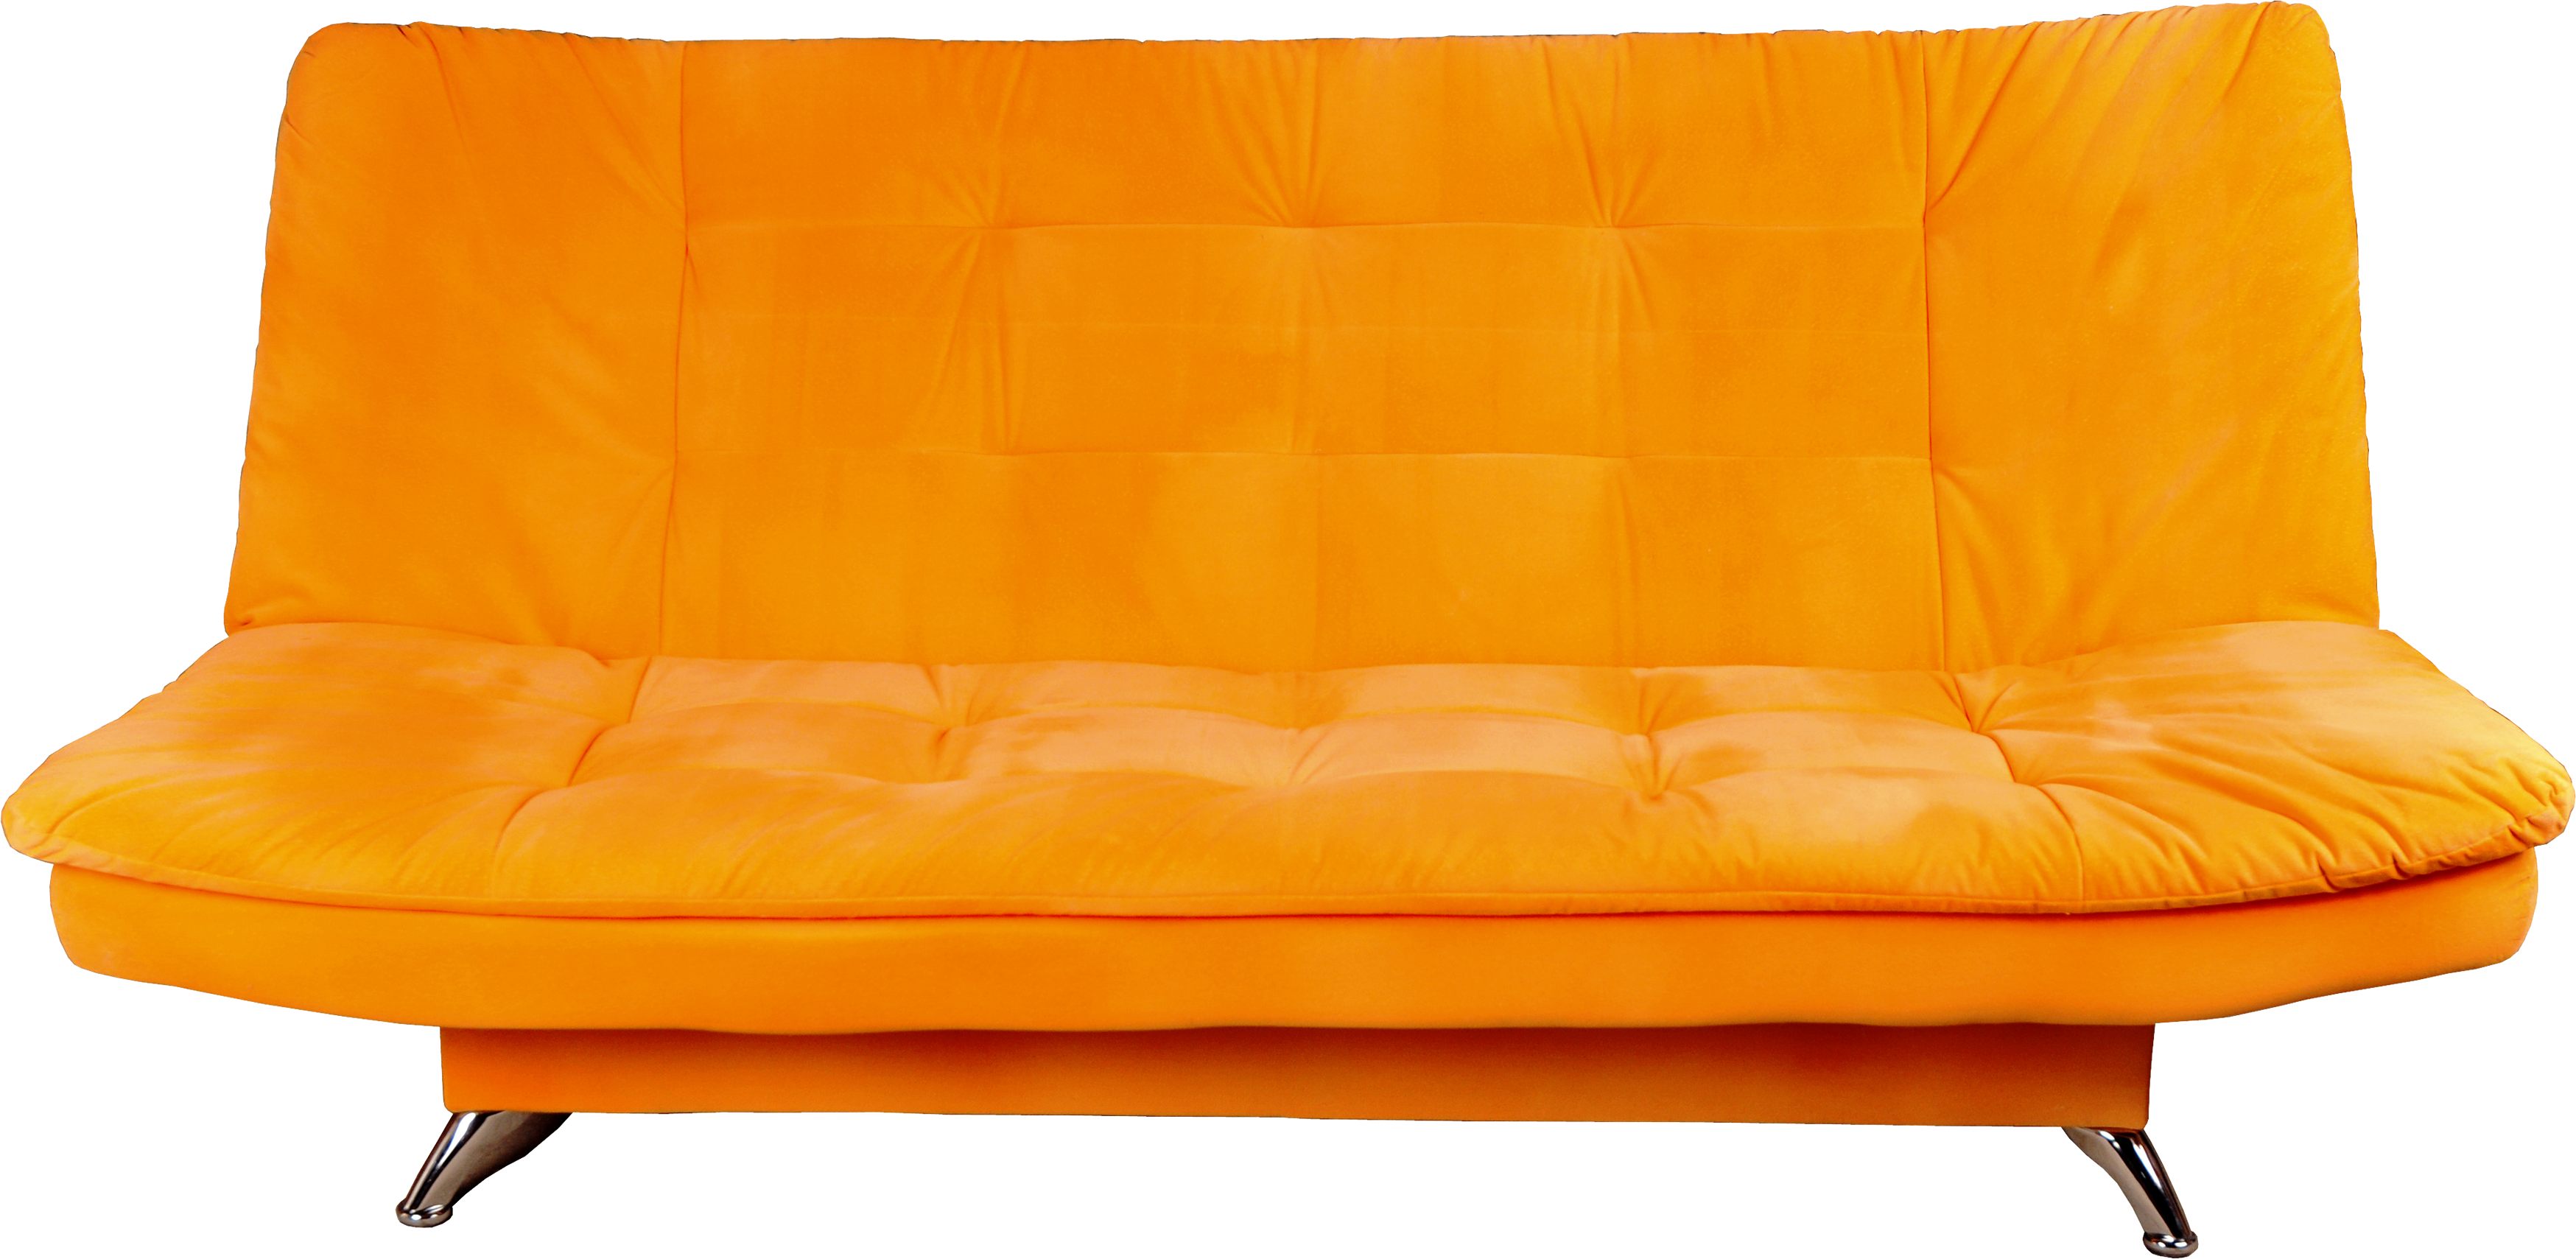 Ghế sofa màu cam